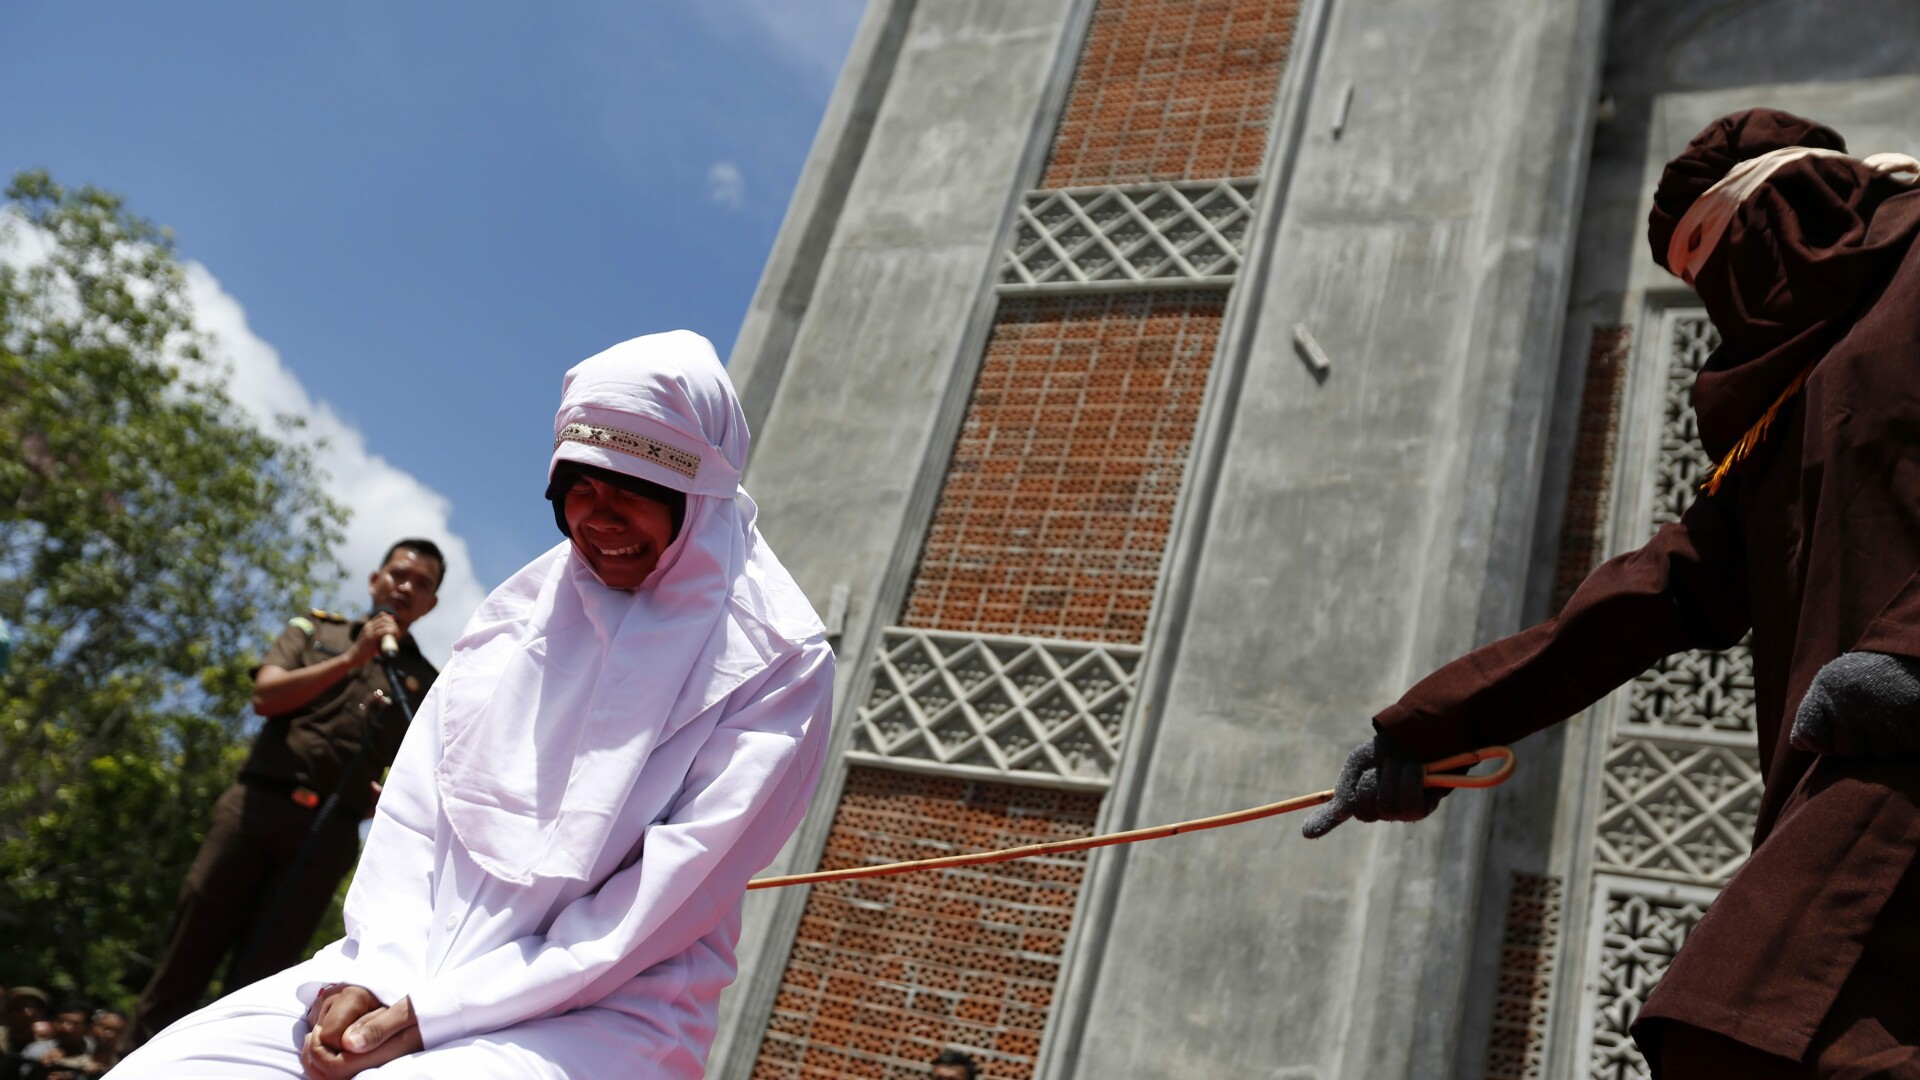 cuplu batut cu biciul in Indonezia - Agerpres